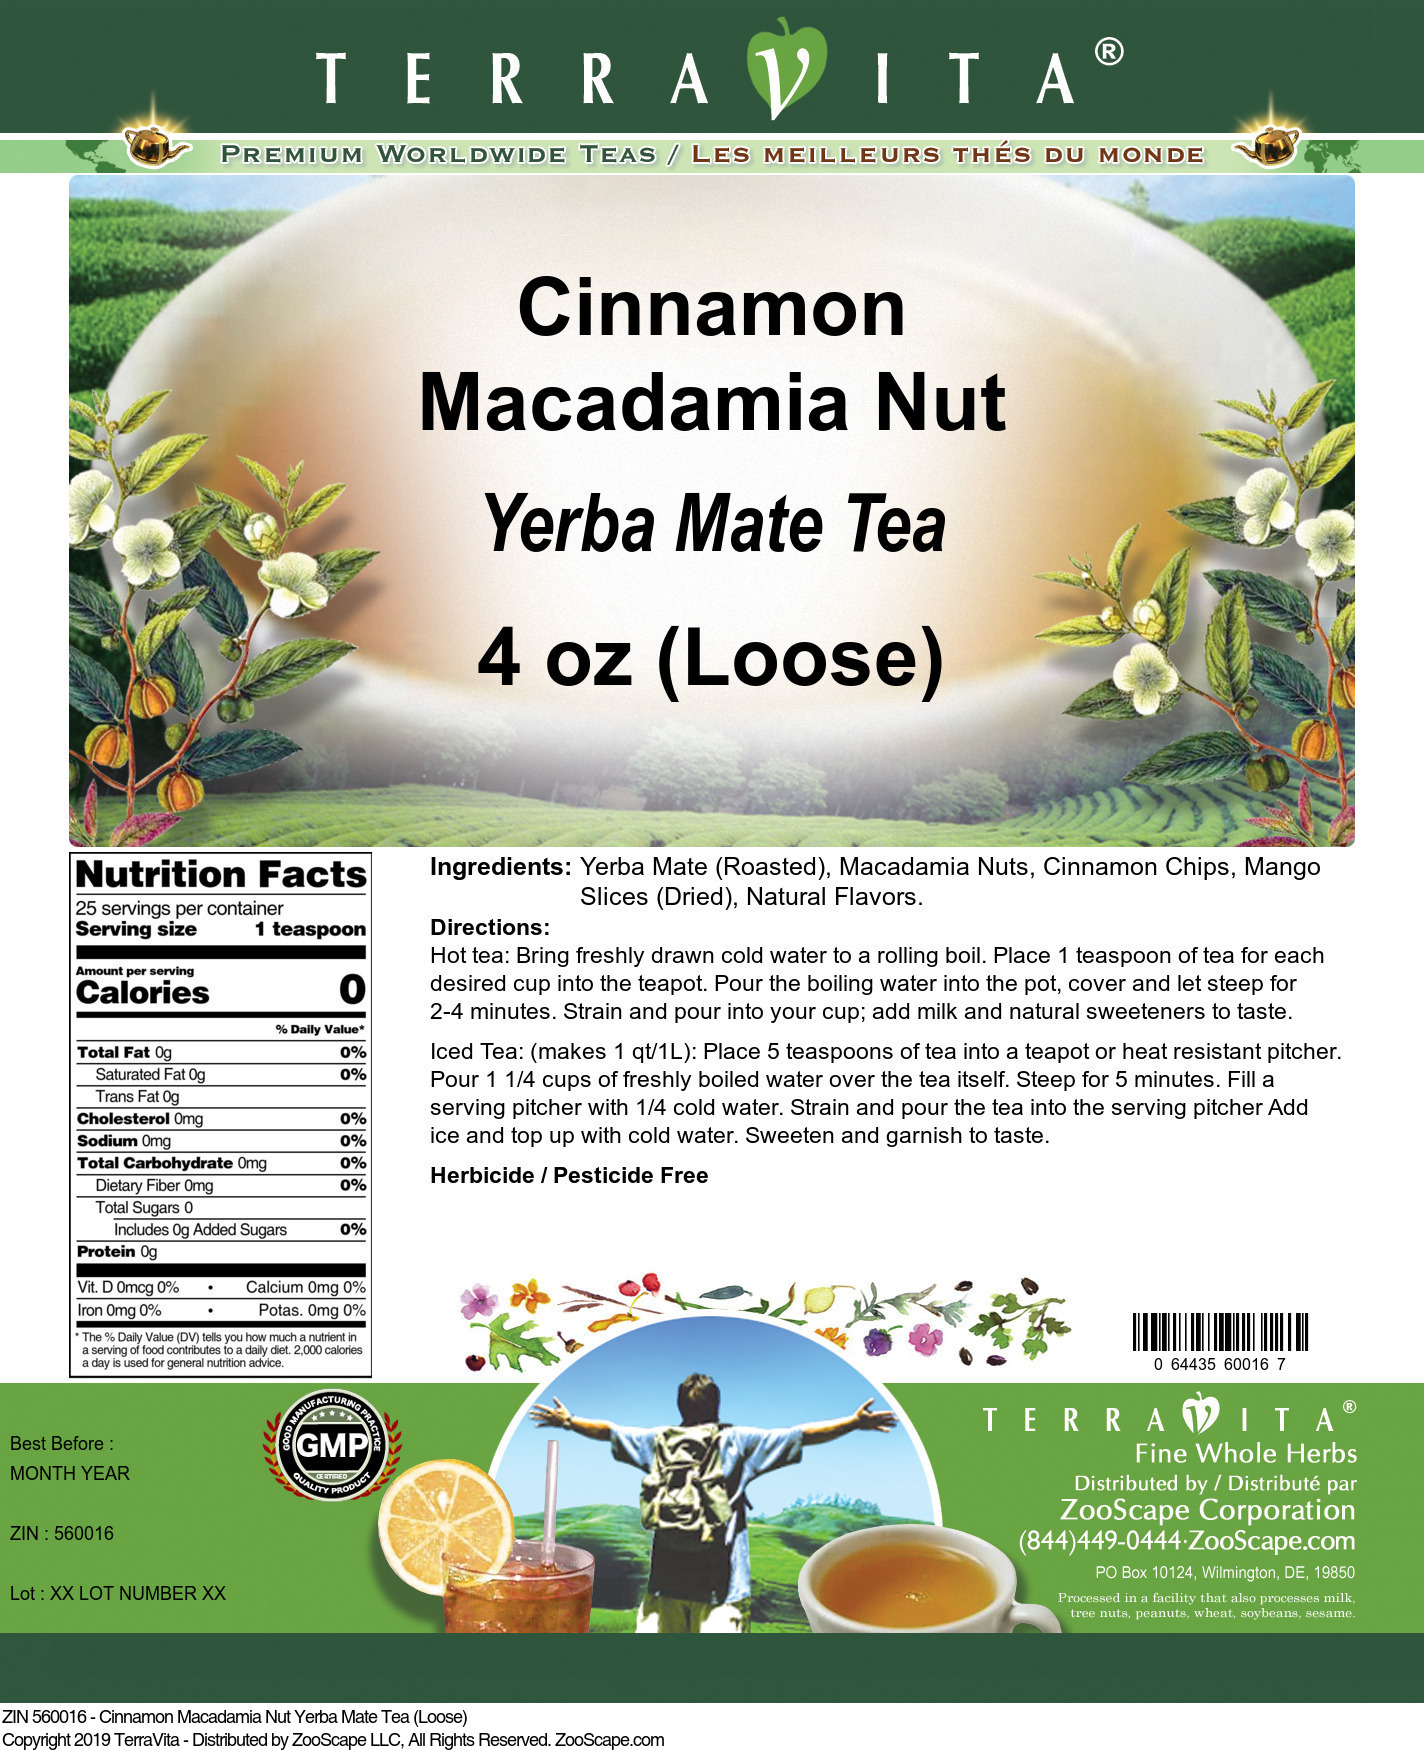 Cinnamon Macadamia Nut Yerba Mate Tea (Loose) - Label